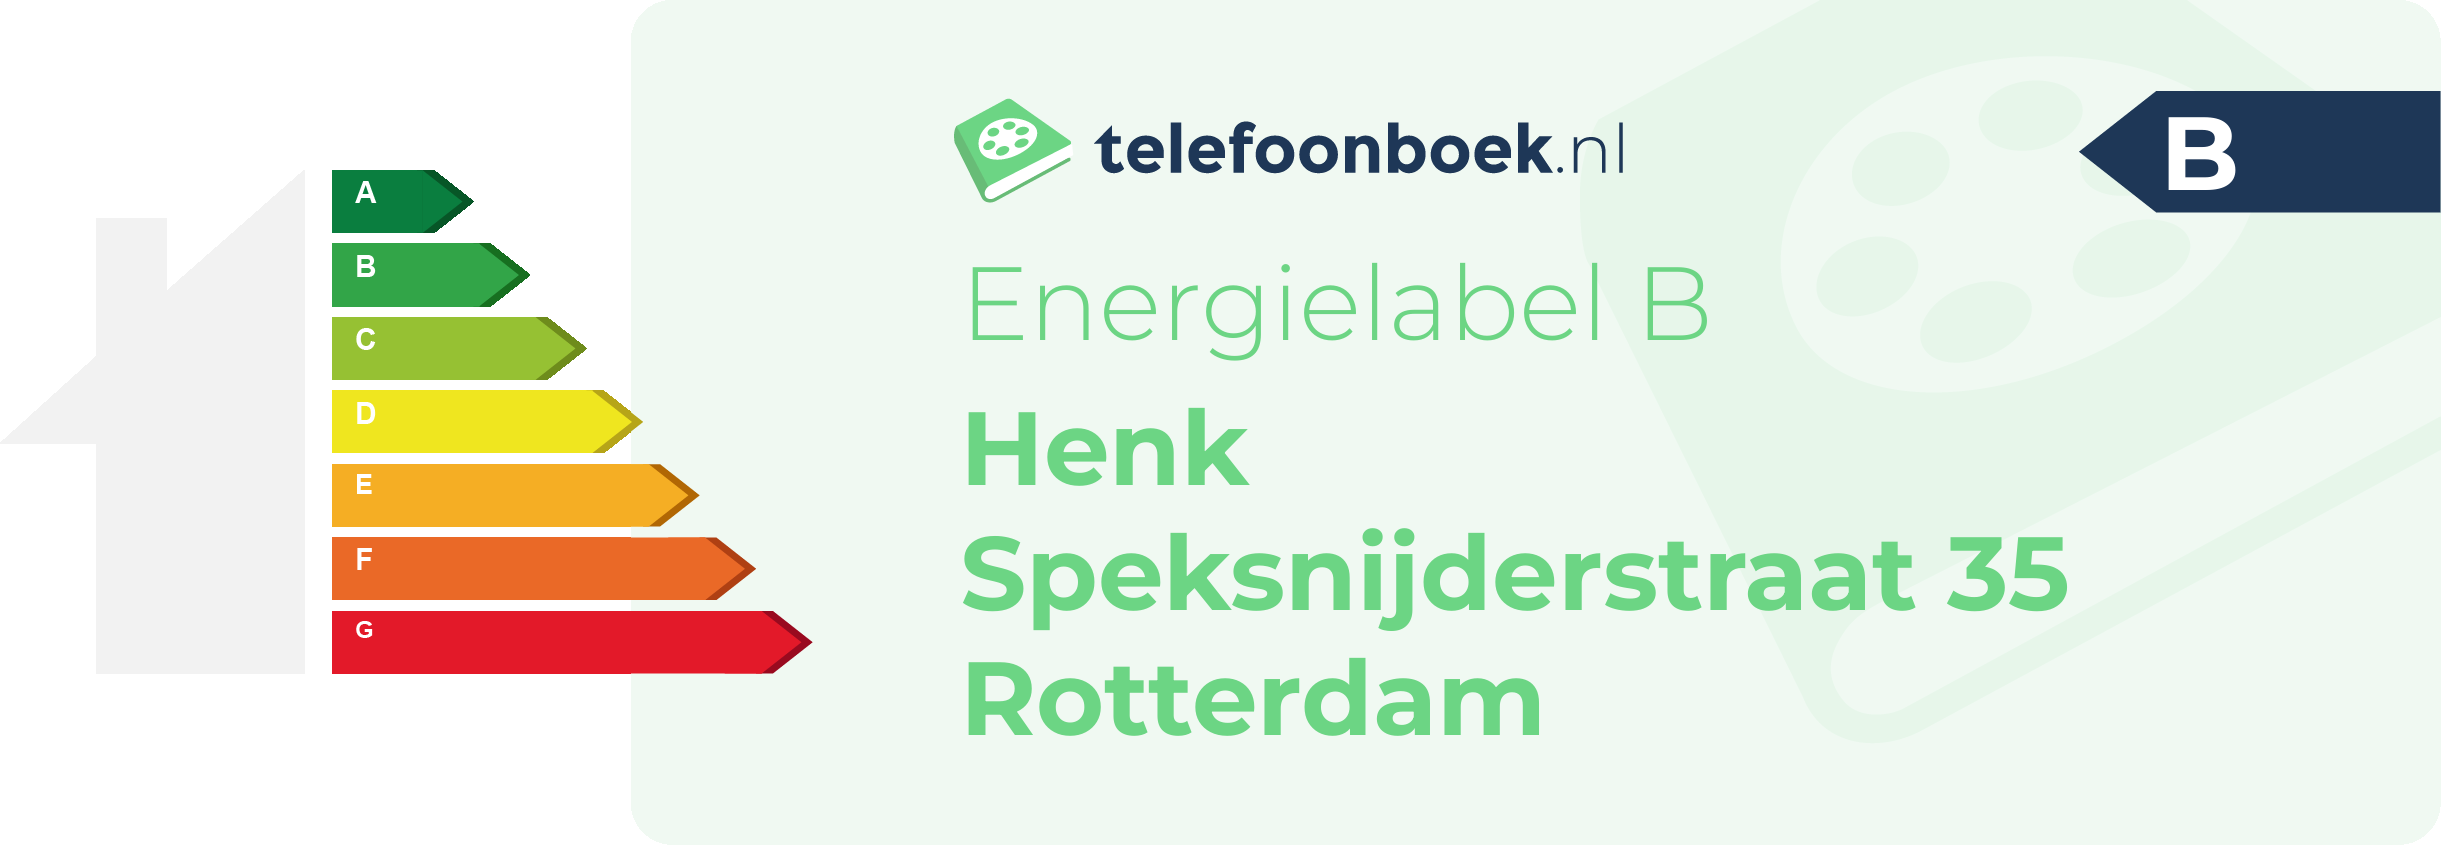 Energielabel Henk Speksnijderstraat 35 Rotterdam